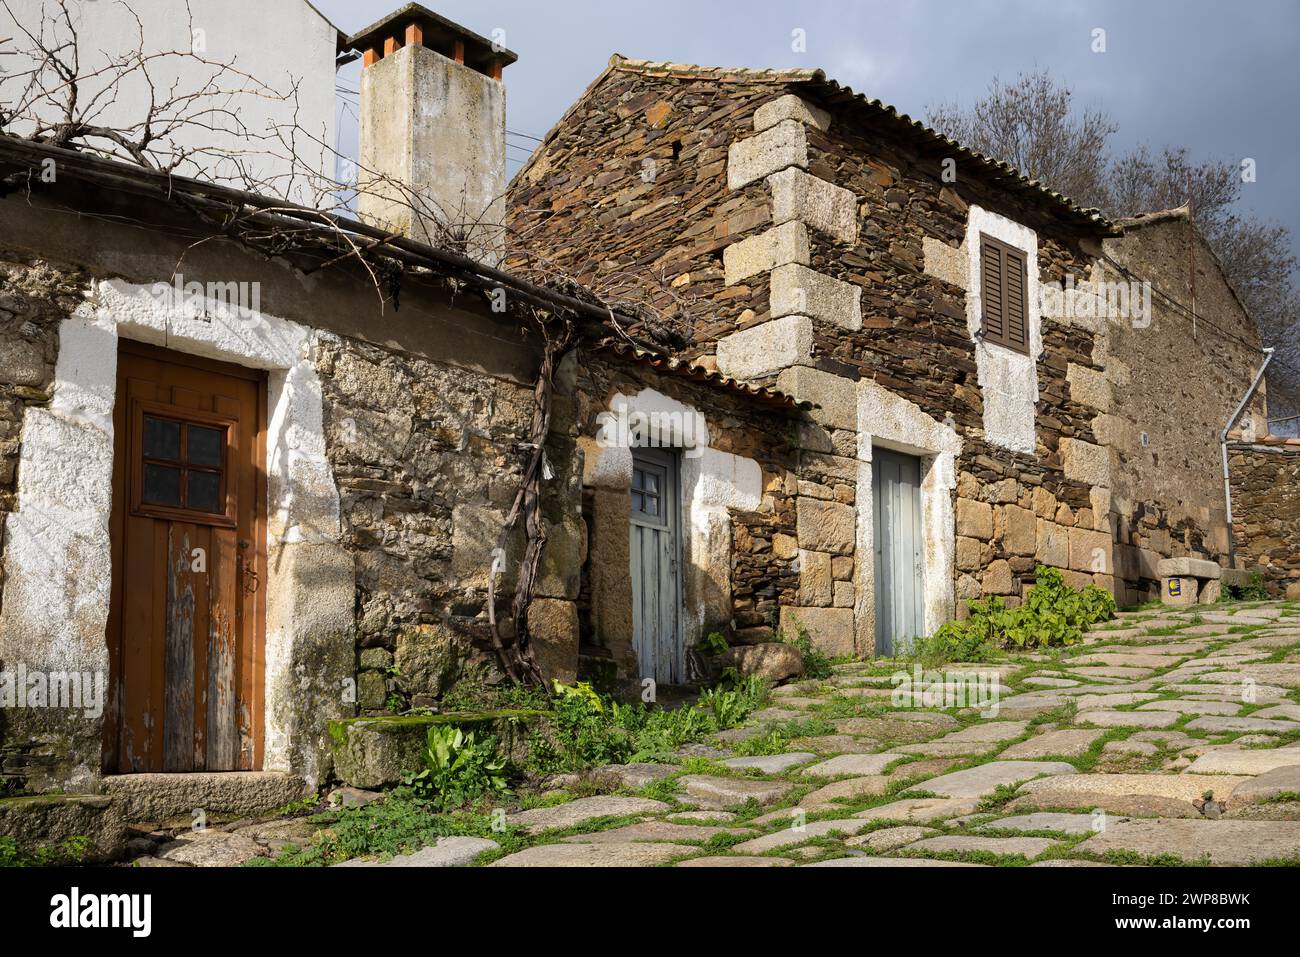 Un chemin de pierre menant à une maison de village altérée à Idanha a Velha, Portugal Banque D'Images